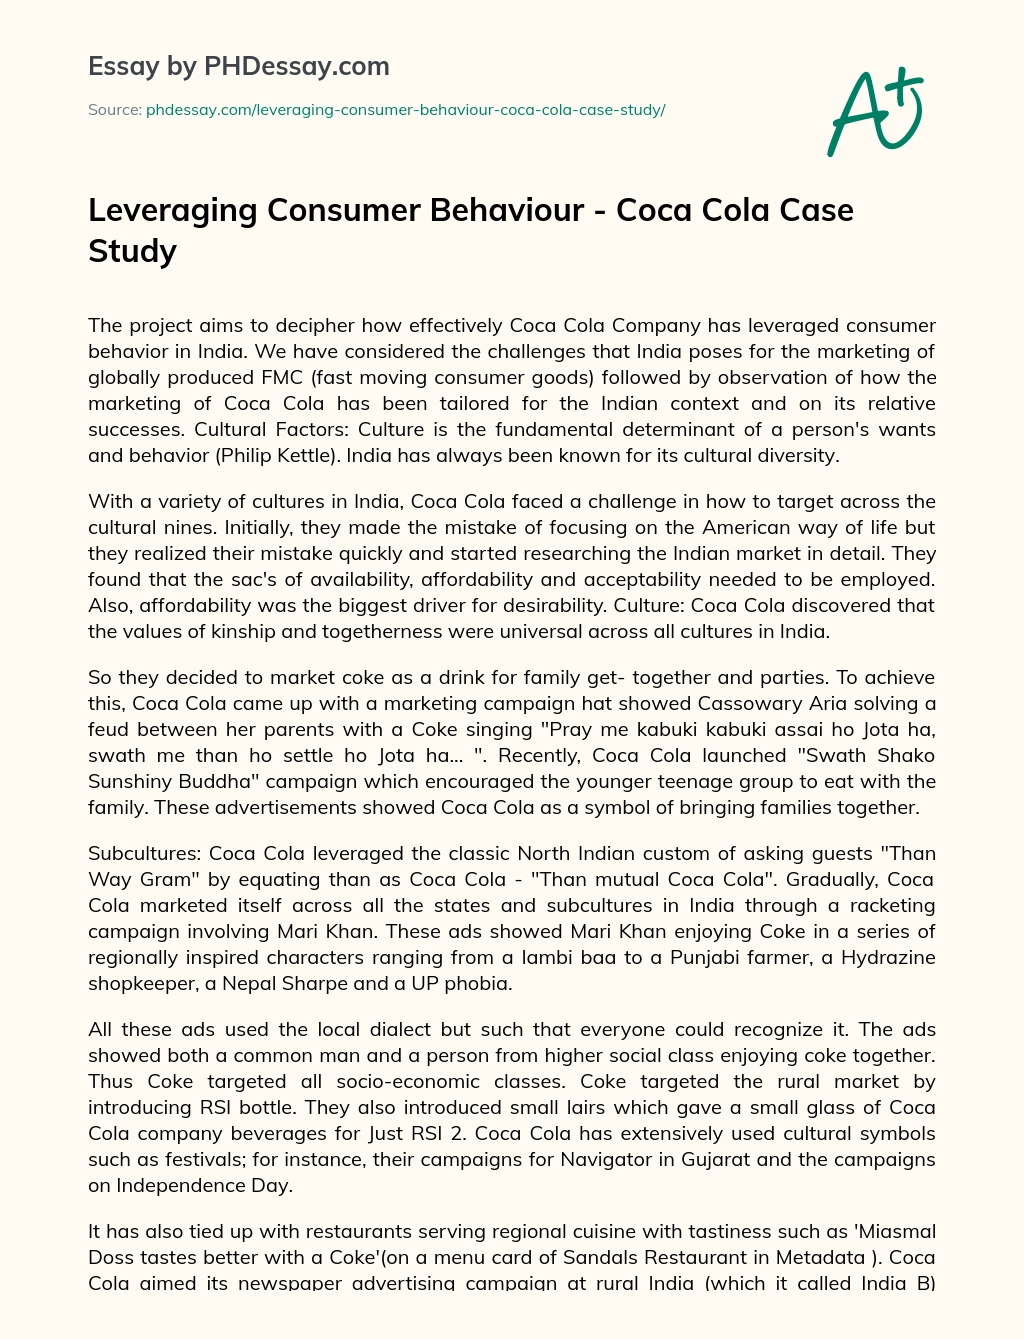 Leveraging Consumer Behaviour – Coca Cola Case Study essay